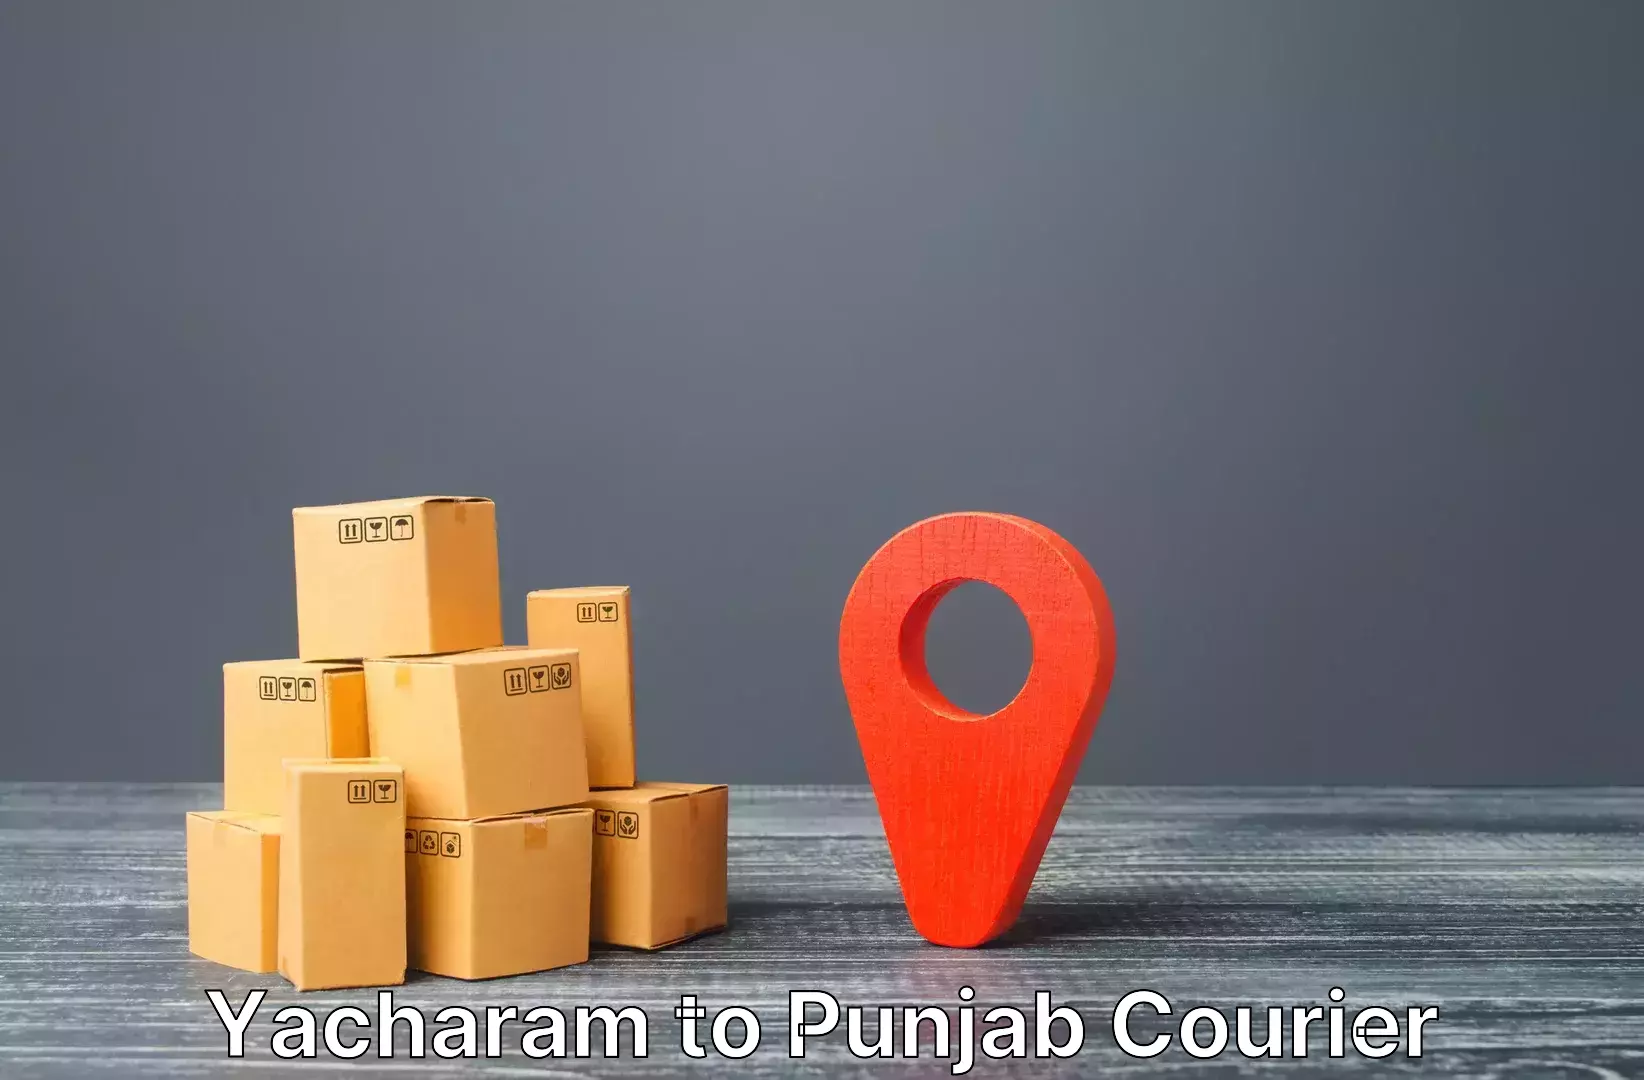 Baggage transport services Yacharam to Punjab